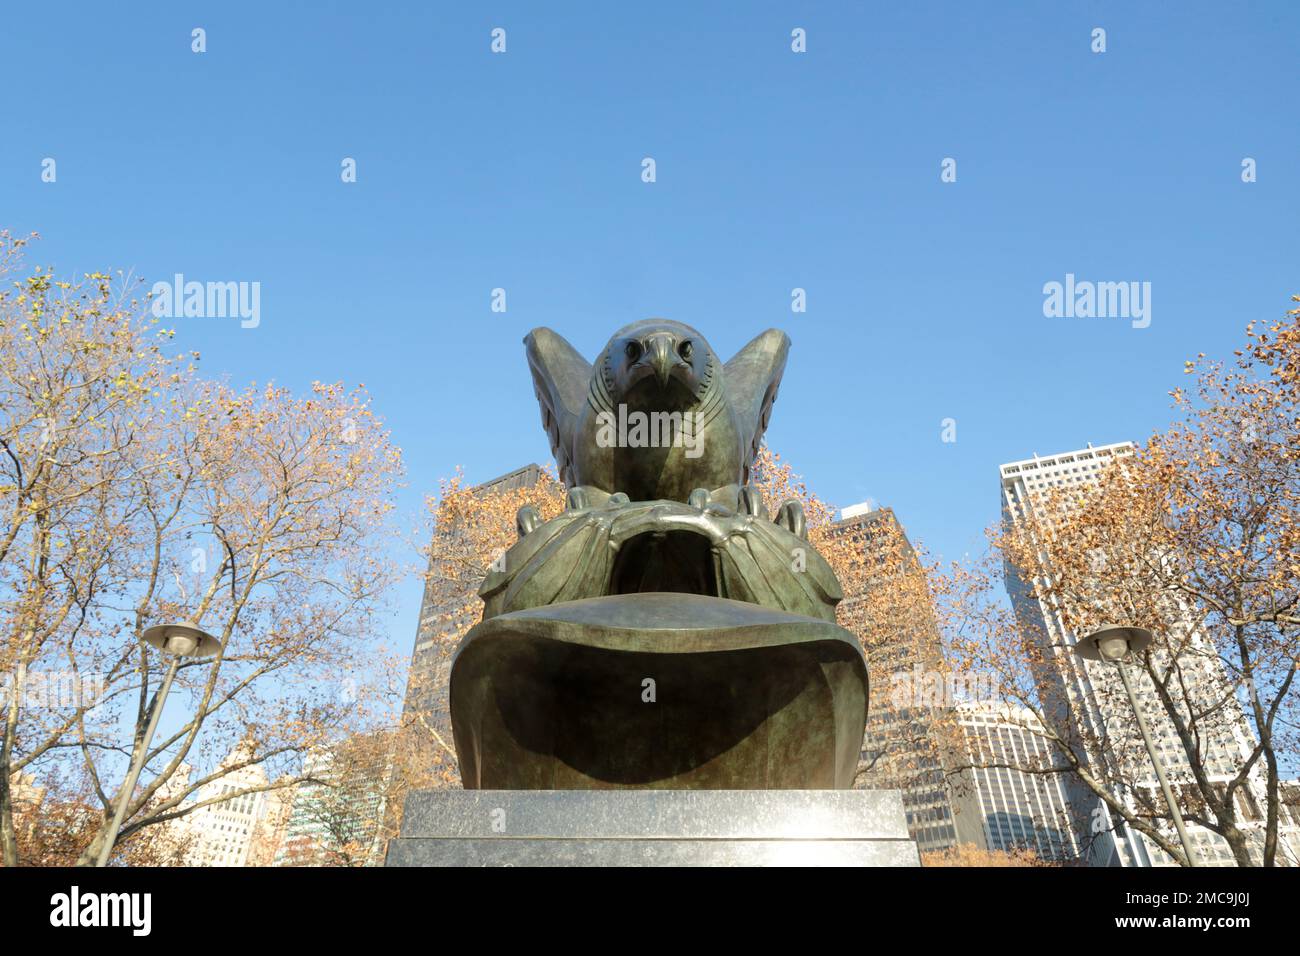 Aigle. Statue. Monument Aigle. En mémoire des soldats et marins perdus en mer durant la seconde guerre mondiale. New York. Etats Unis. / Eagle statue. Stock Photo